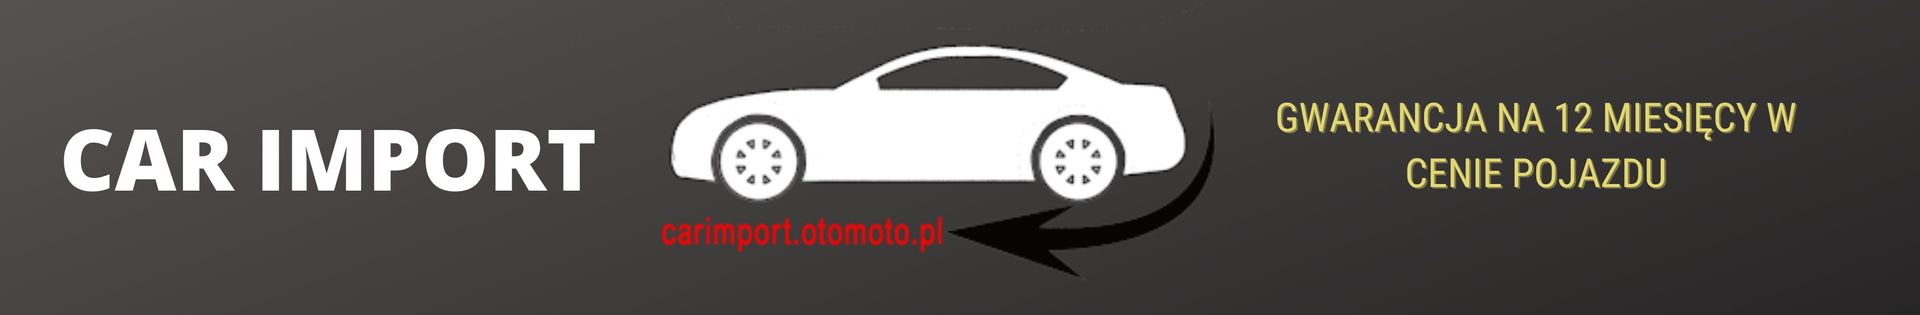 Car Import - Samochody z GWARANCJĄ top banner